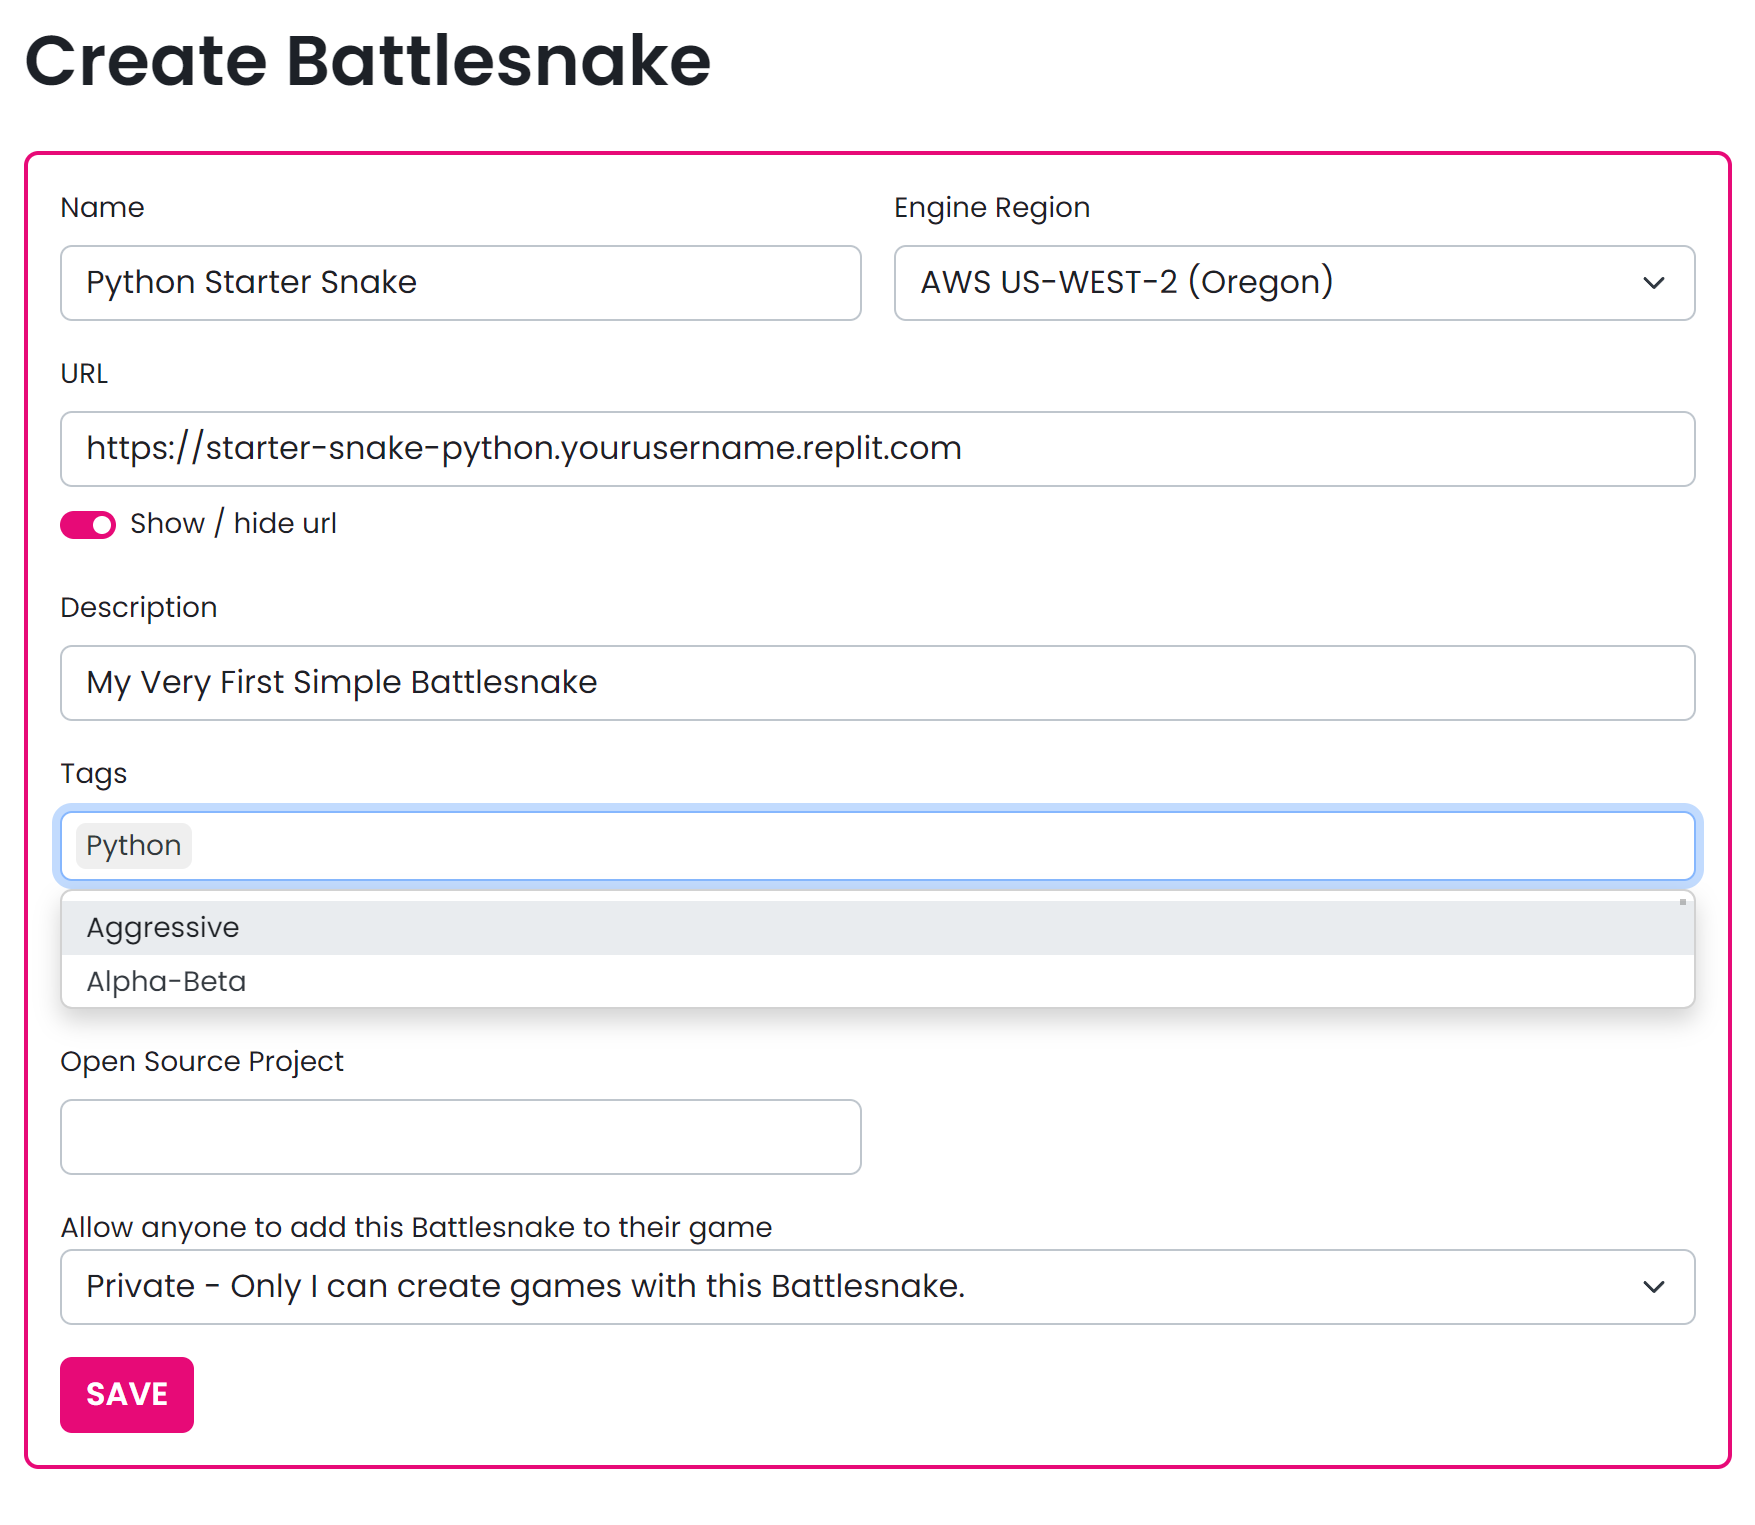 Form for registering a Battesnake